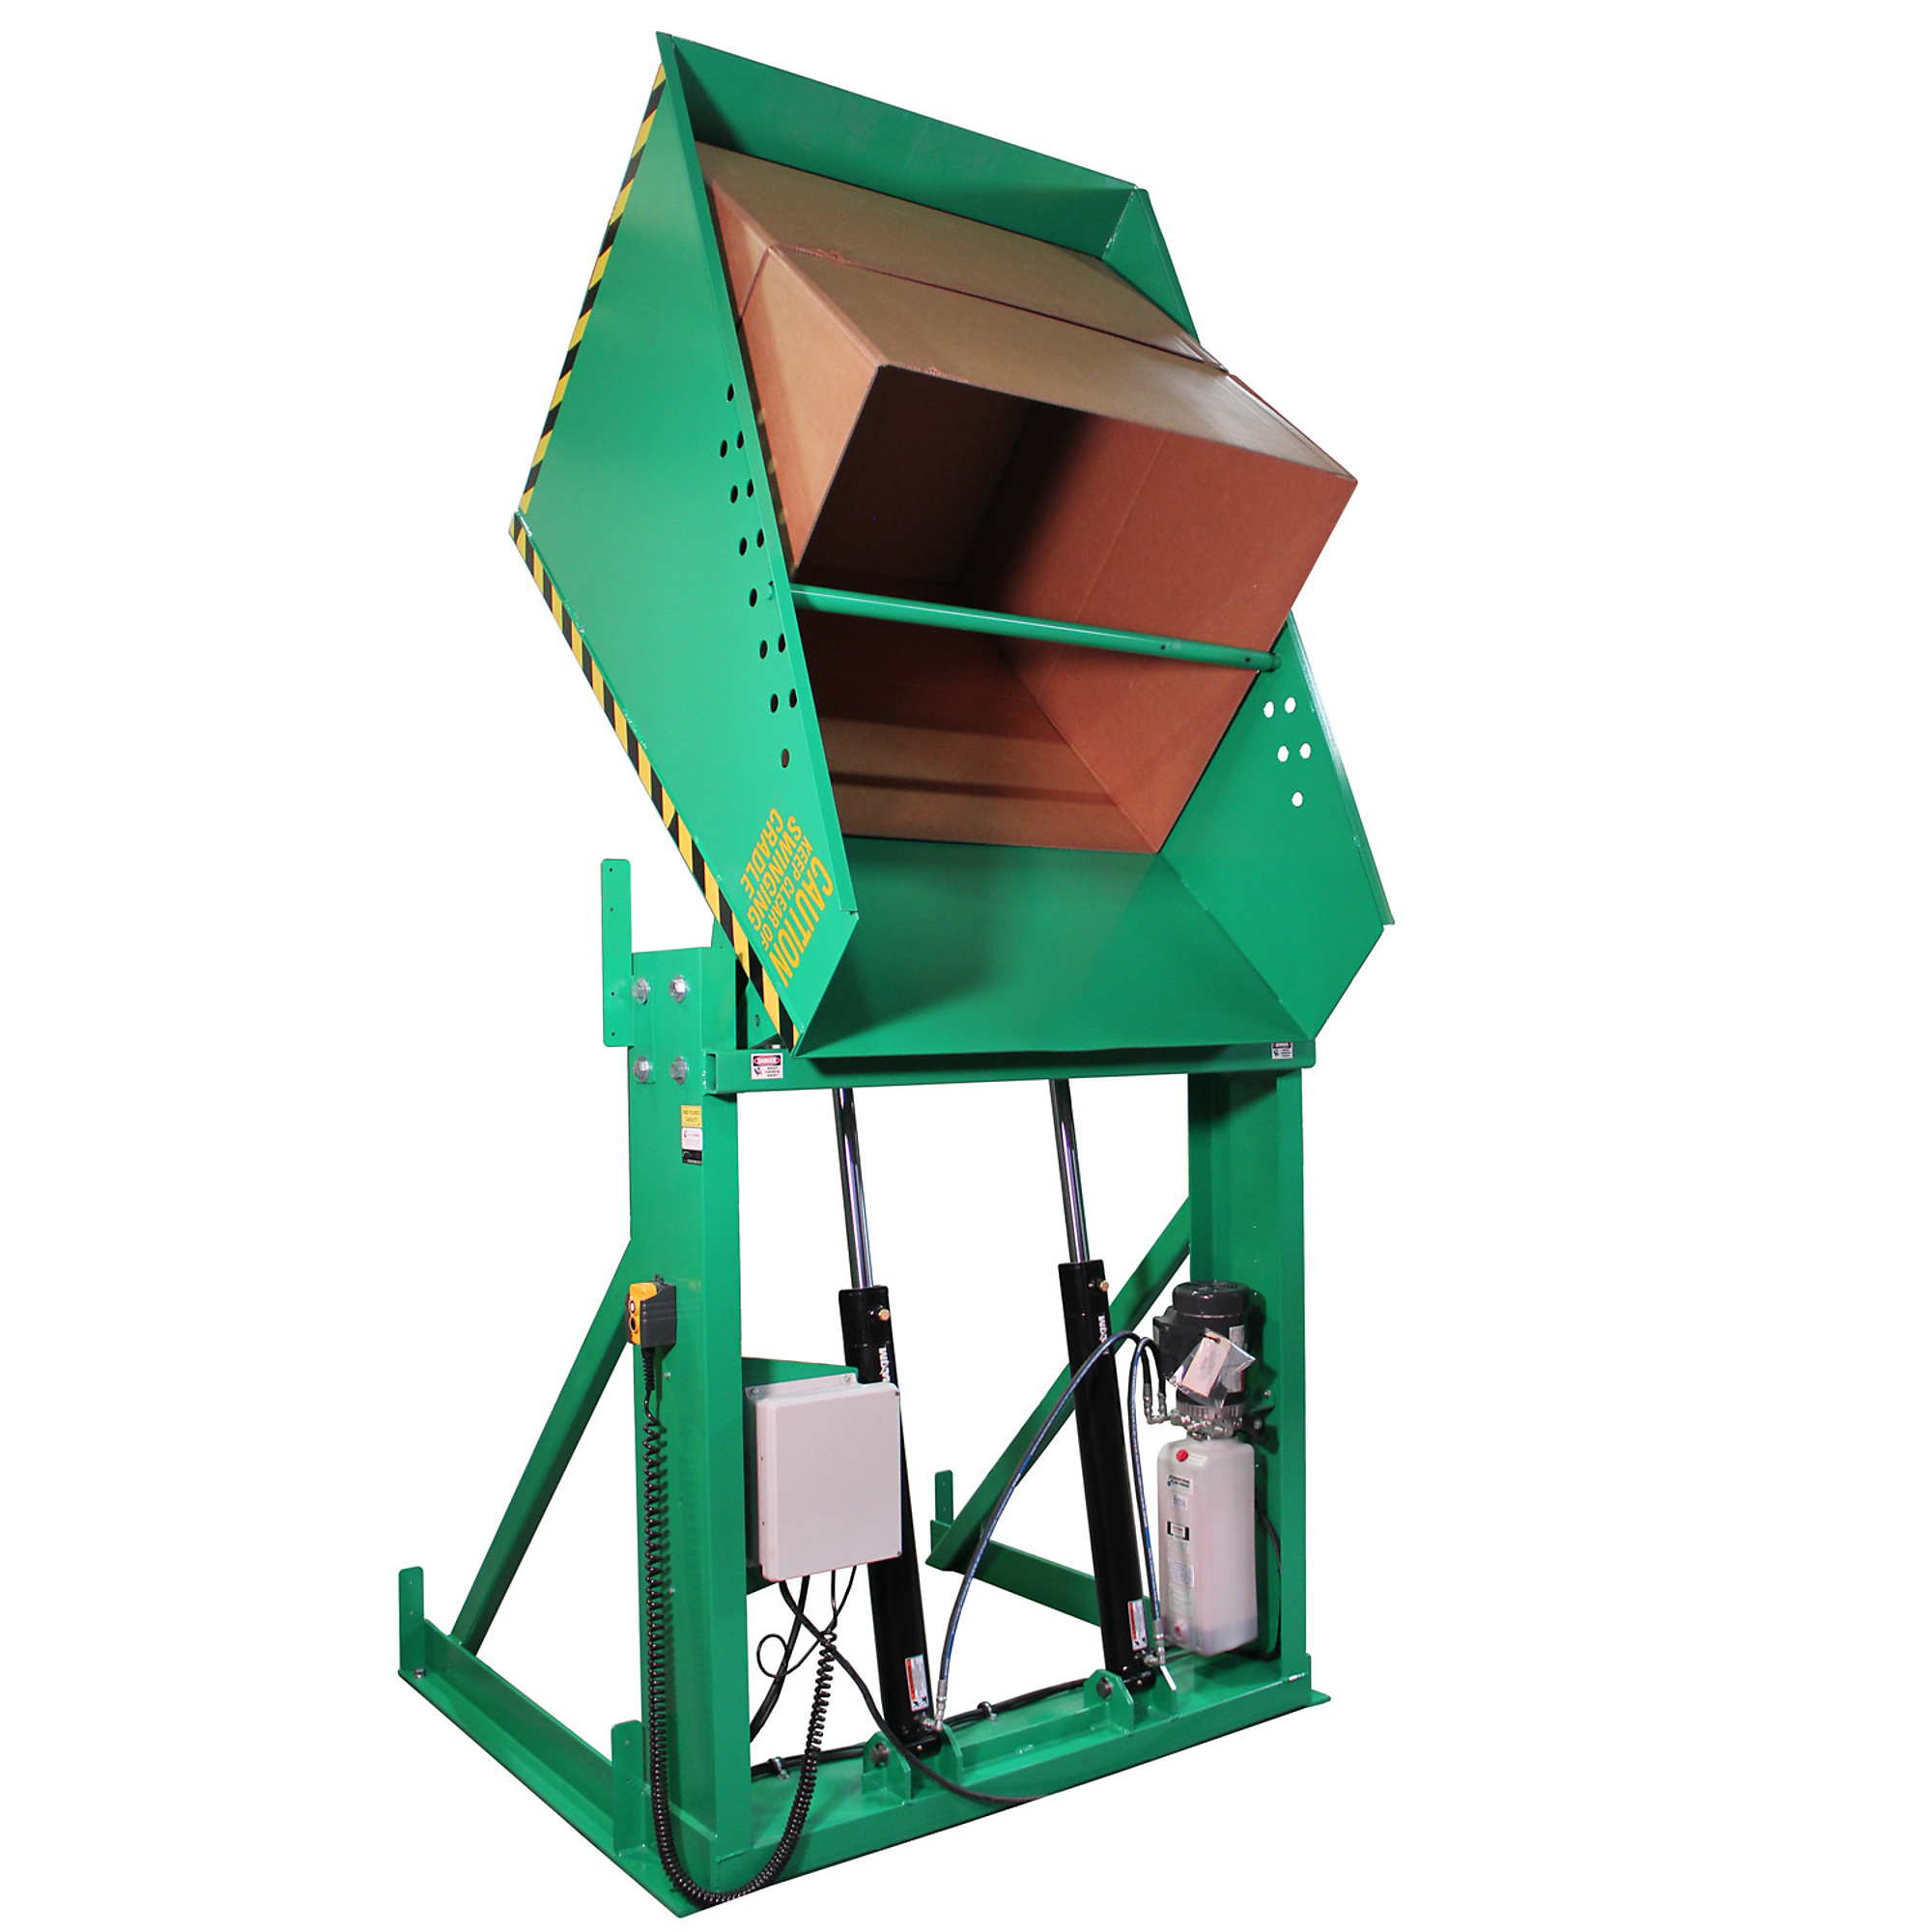 Valley Craft, Box Dumper, 36x36Inch Chute, Capacity 6000 lb, Color Green, Model F80188A8